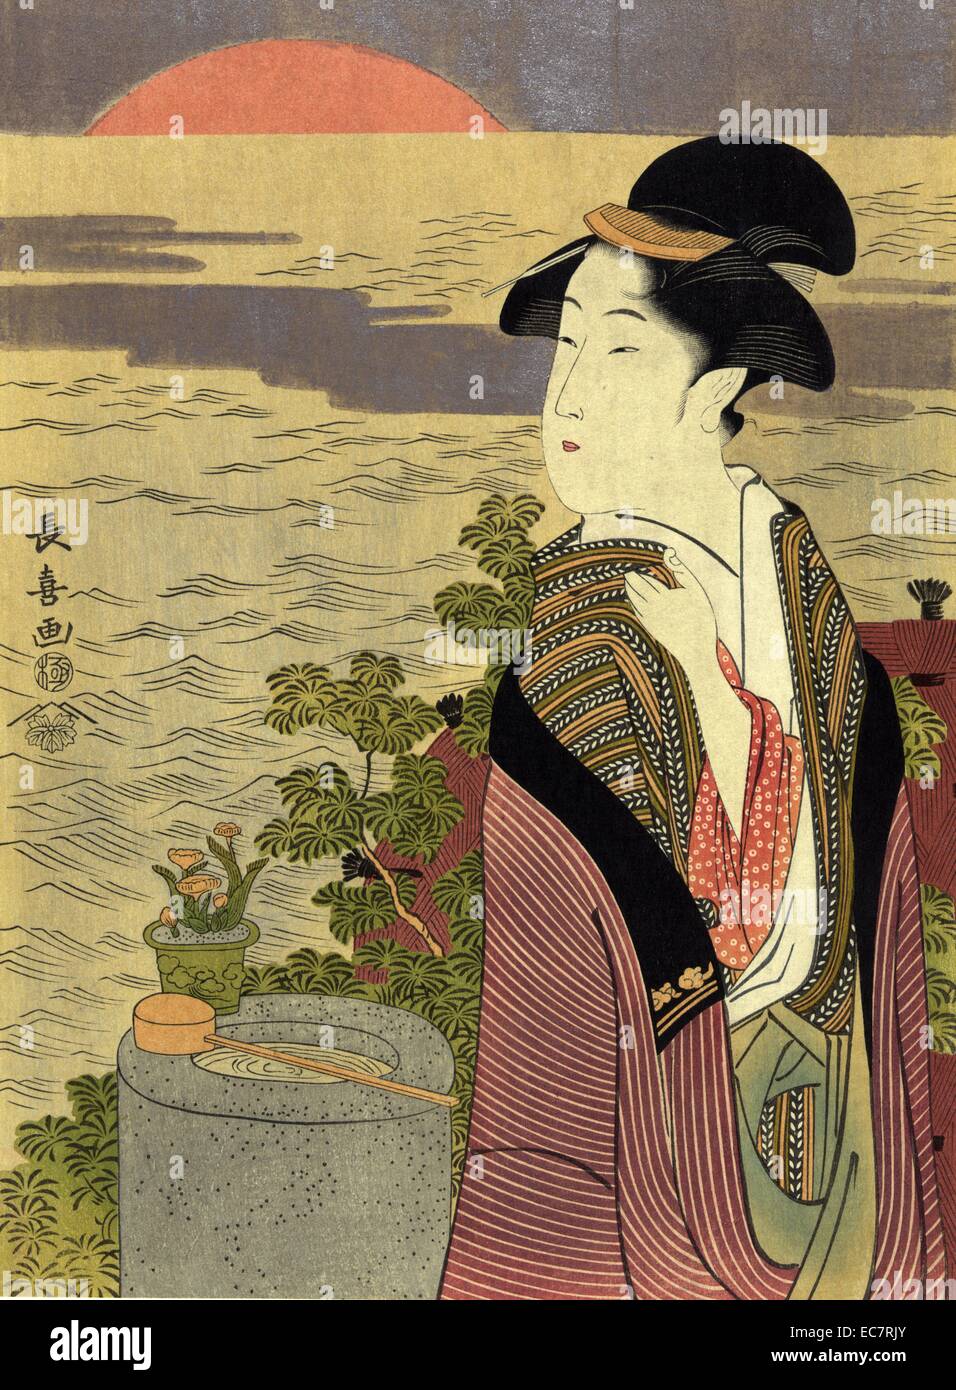 (Hatsuhinode premier lever du soleil). Par Eishosai Choki ; active 1789-1823 ; artiste japonais. Imprimer montre une femme debout sur une colline surplombant la mer au lever du soleil. Banque D'Images